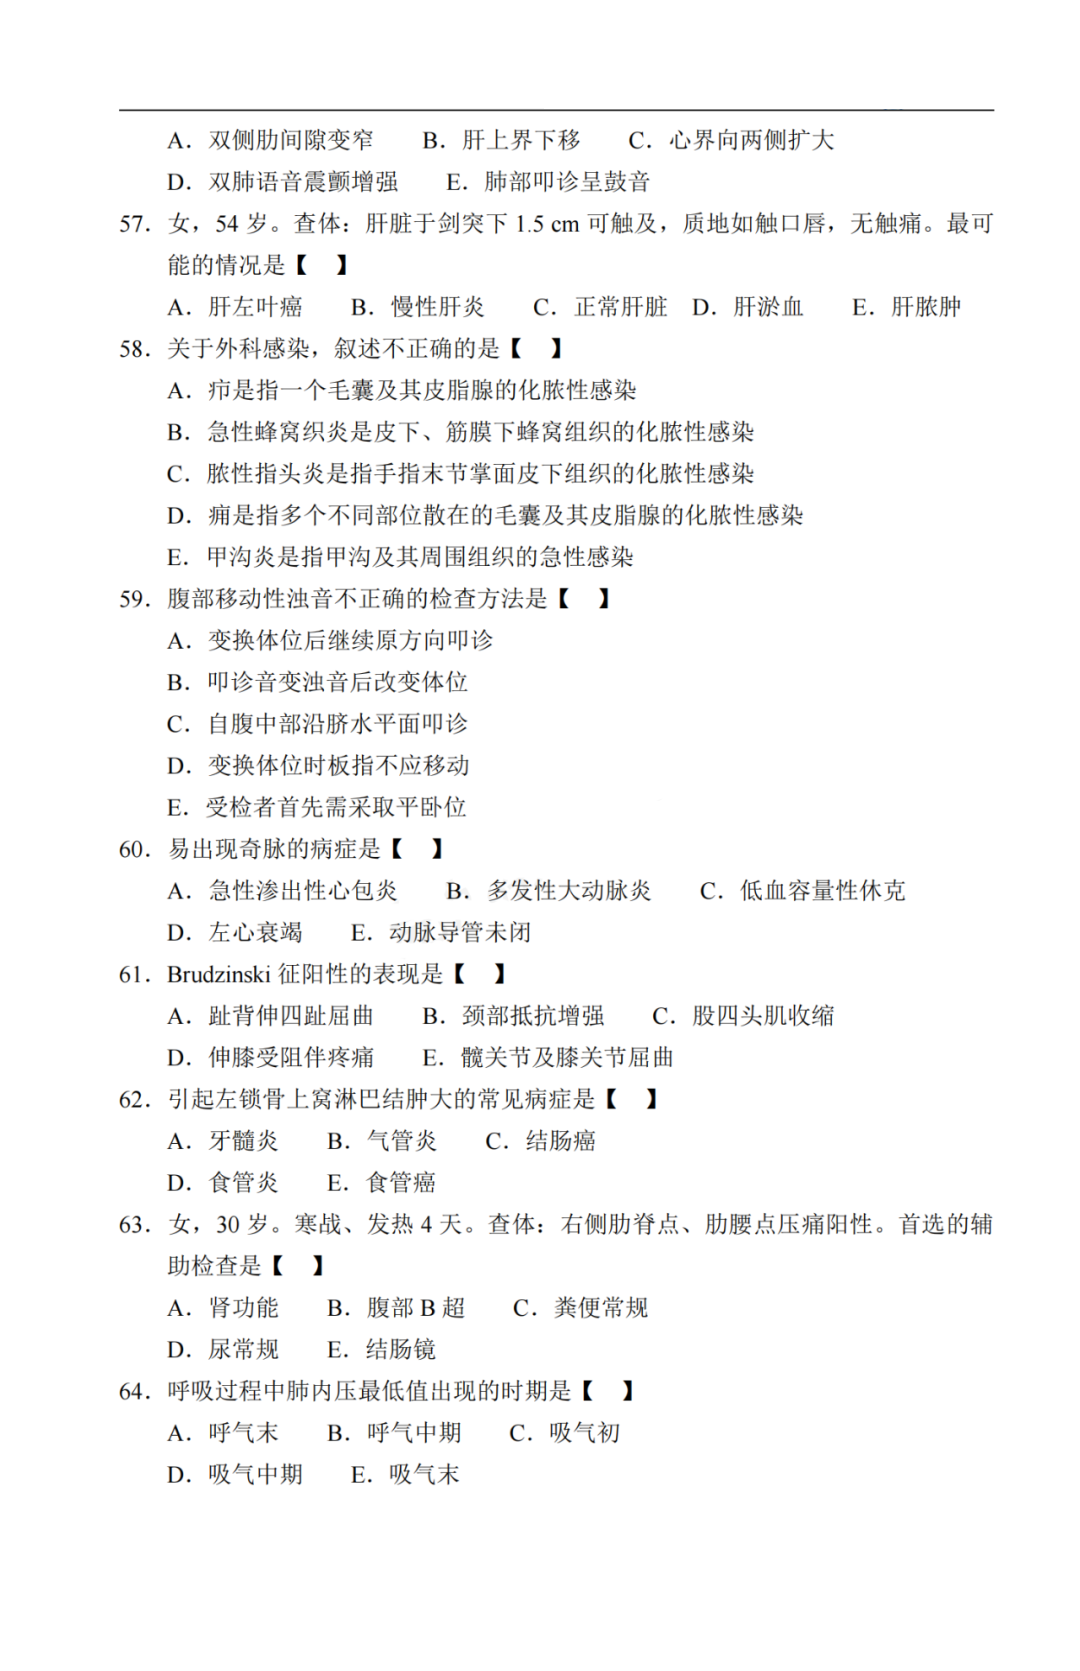 2020年重庆市成人高考《医学综合》考试真题及答案解析